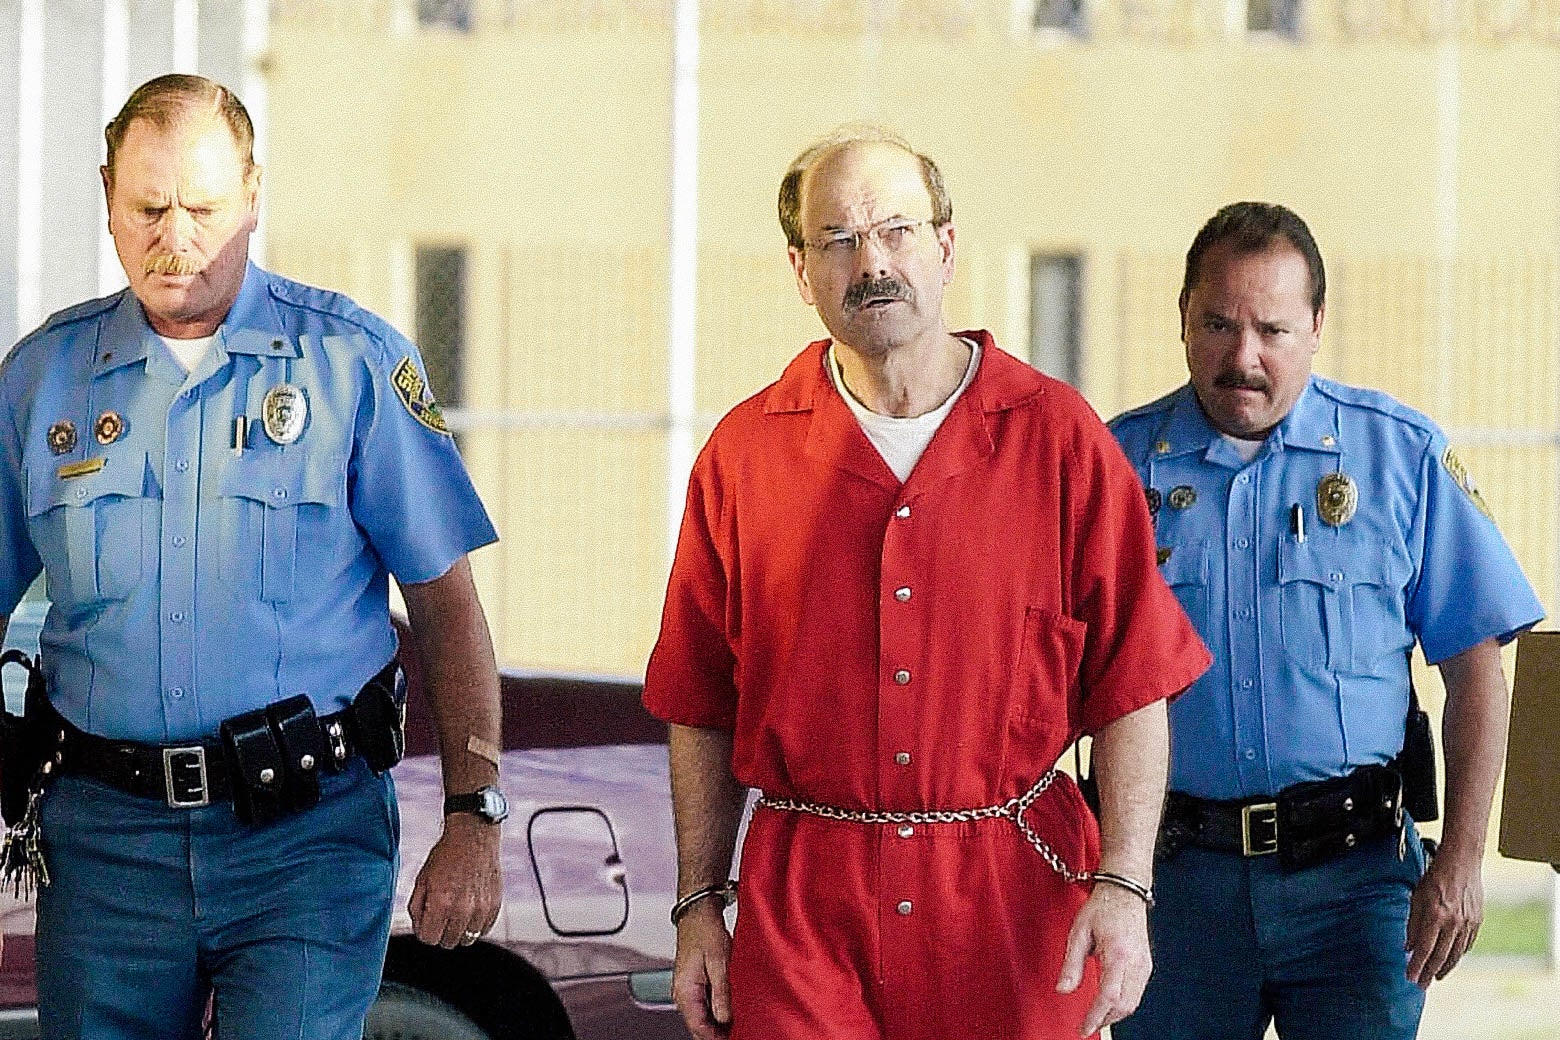 Dennis Lynn Rader wearing prison jumpsuit and handcuffs.